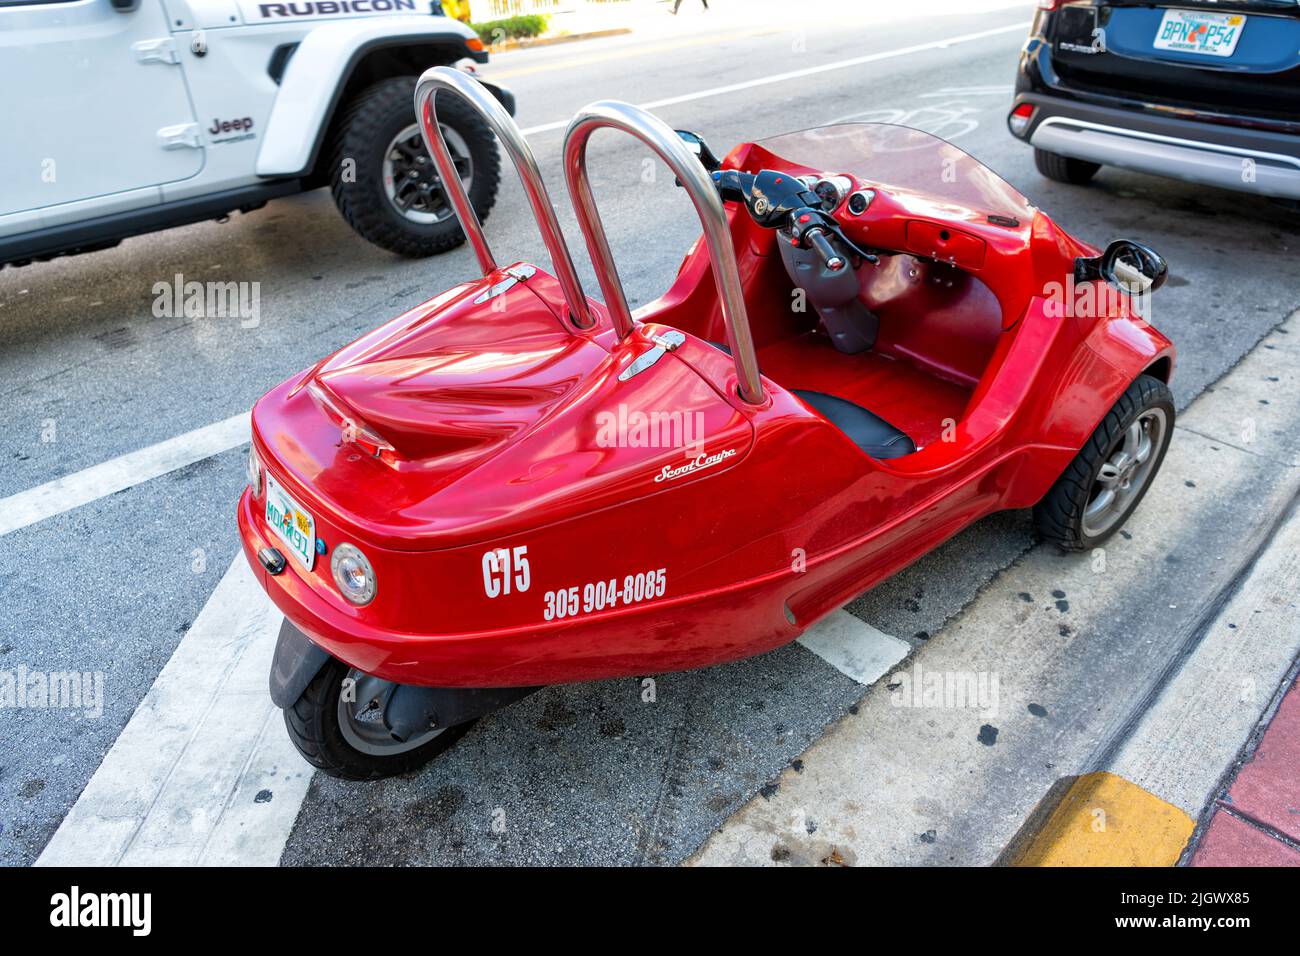 Miami Beach, Florida EE.UU. - 14 de abril de 2021: Ciclomotor red Scootcoupé, vista trasera. Foto de stock